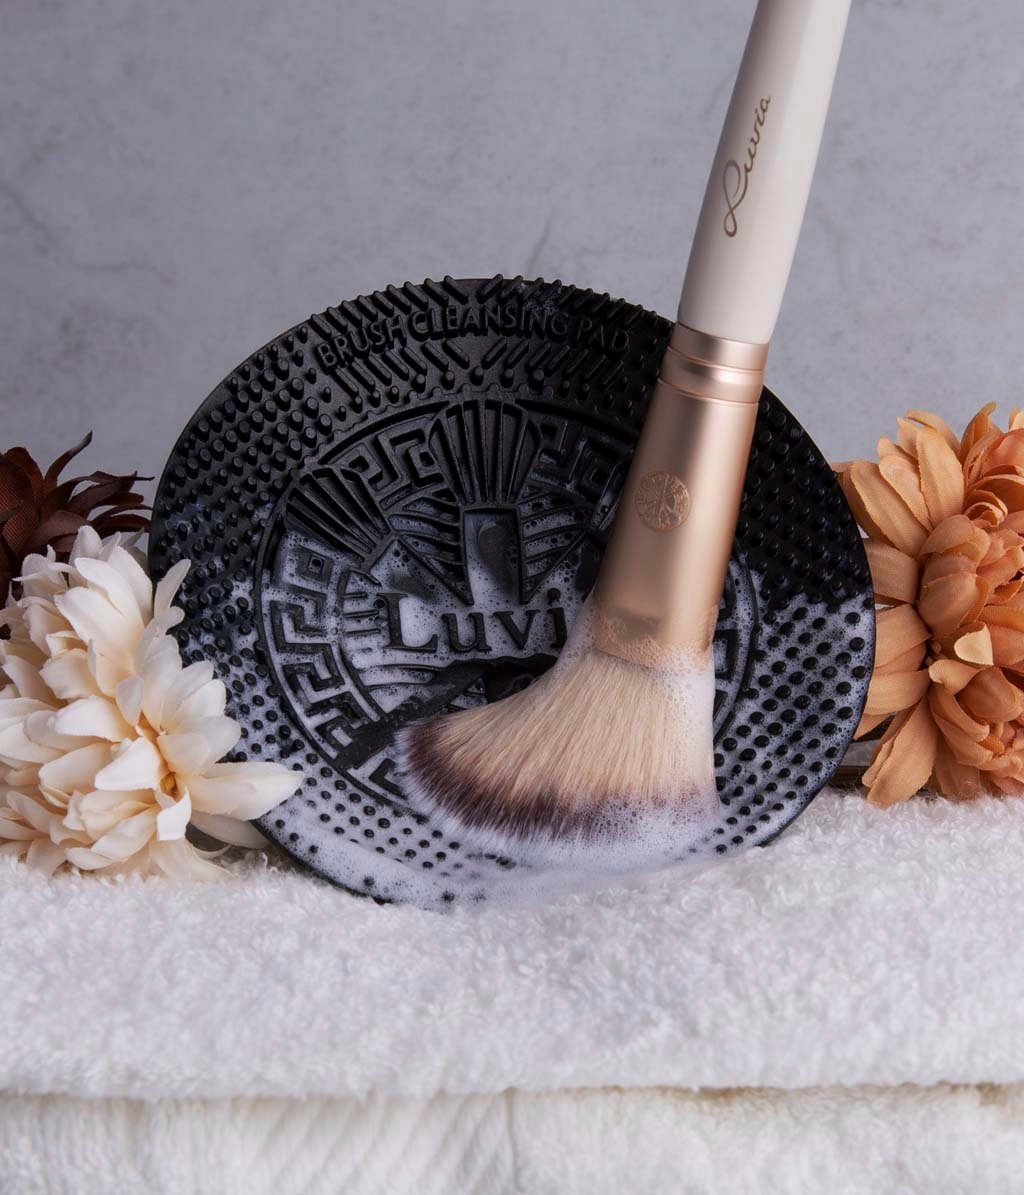 Luvia Cosmetics Kosmetikpinsel-Set Brush jede in Black, bequem Reinigung; Design Hand. passt Pad Cleansing wassersparende für 